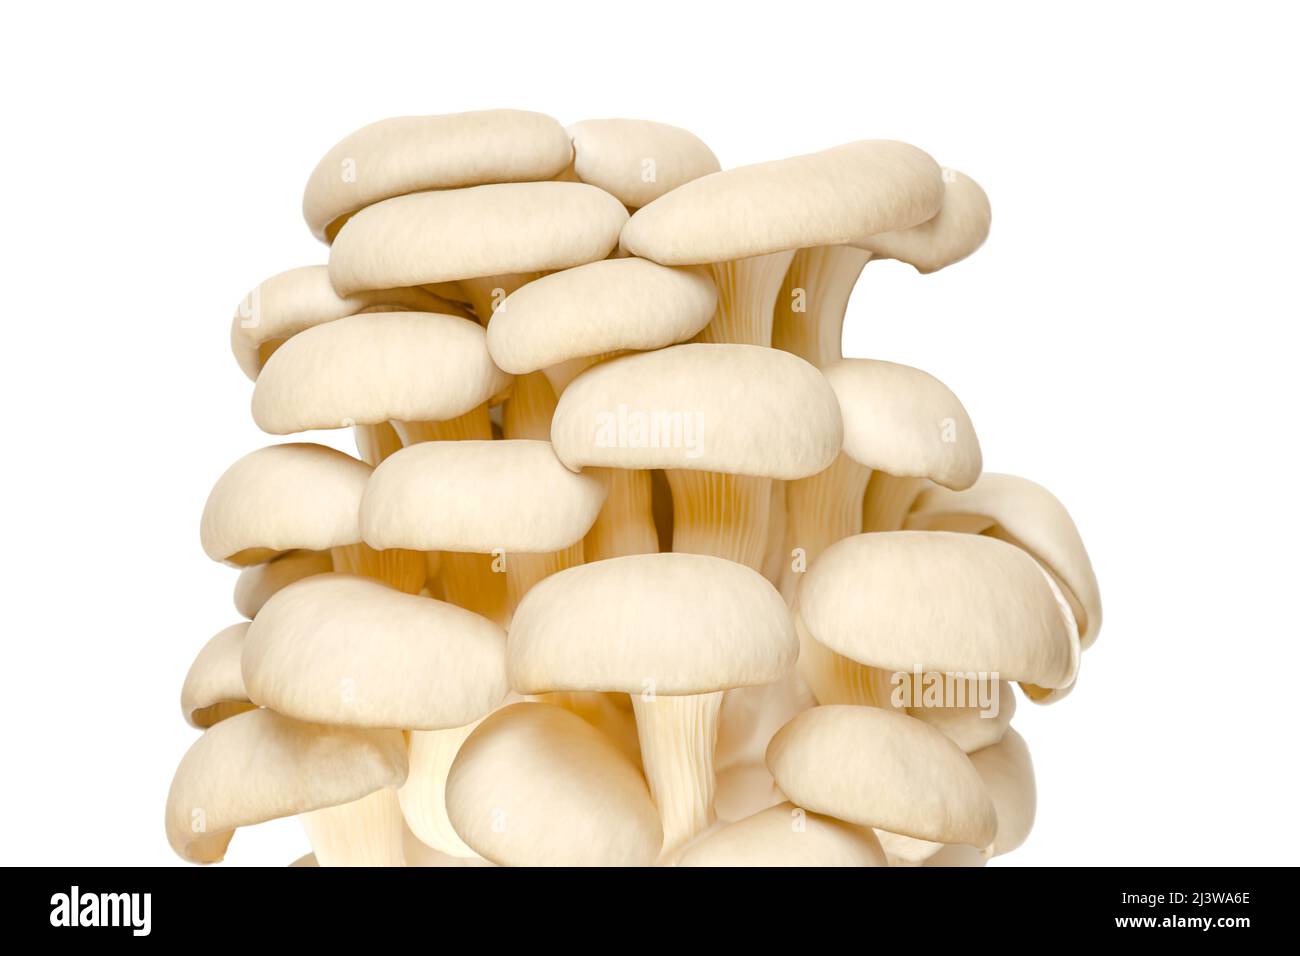 Groupe de champignons d'huîtres frais, vue avant. Pleurotus, également connu sous le nom d'ormeau ou de champignon d'arbre. L'un des champignons les plus cultivés et les plus consommés. Banque D'Images